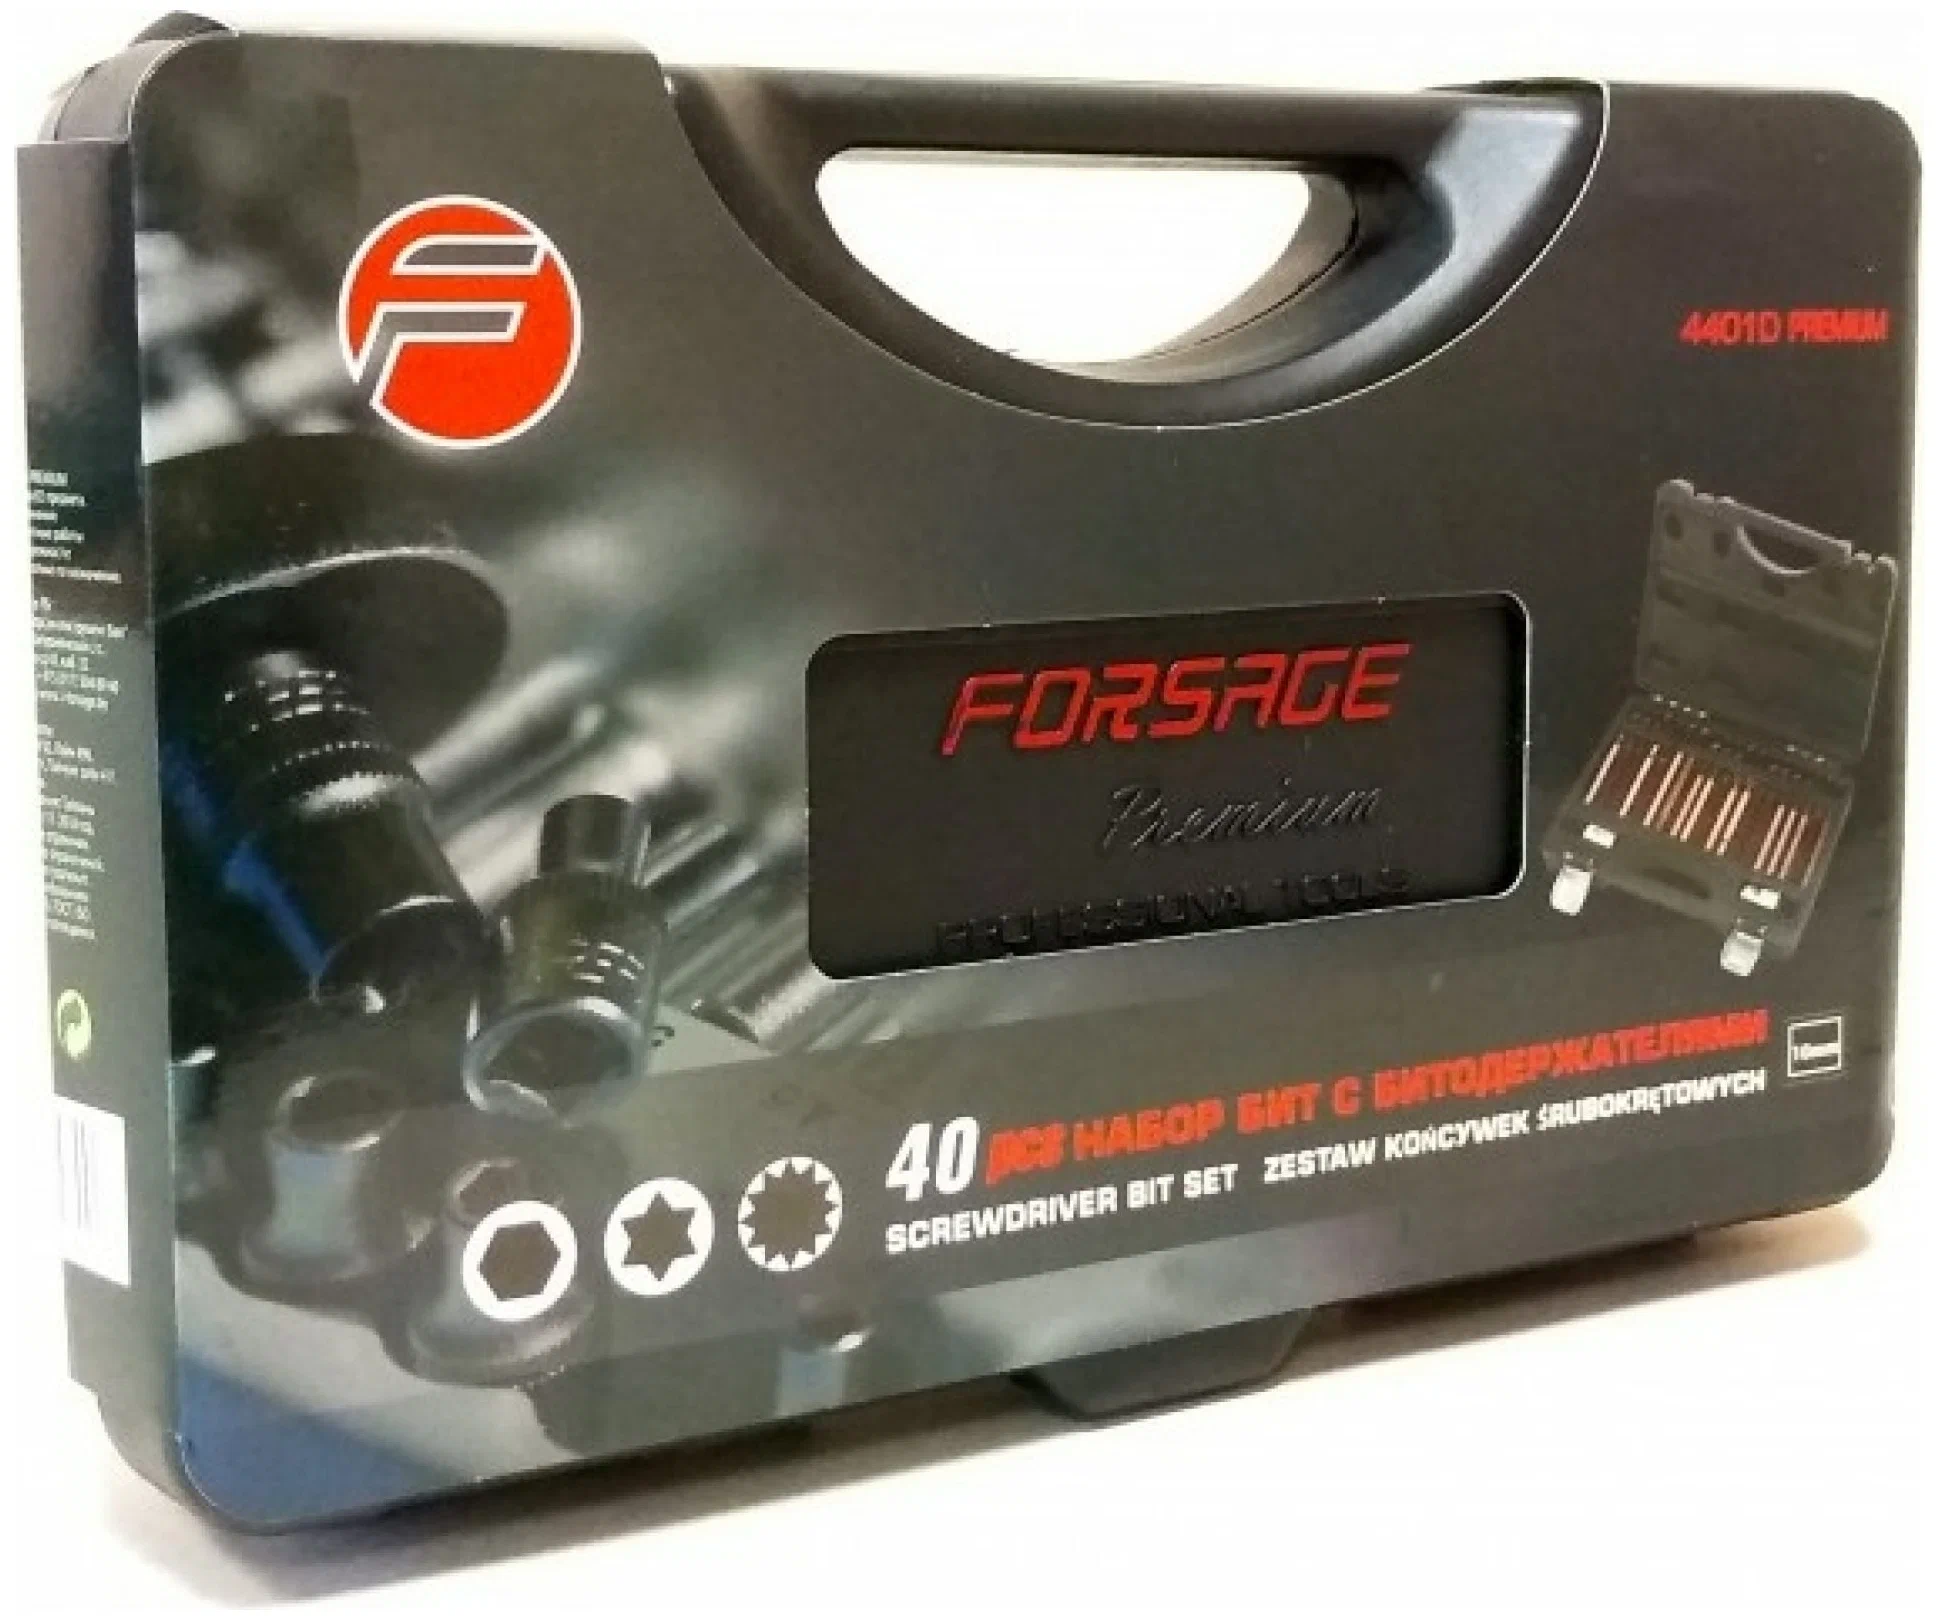 Forsage F-4401D Набор Бит С Битодержателями Premium , 40Пр. (10Мм)(75/30Мм: T20-T55,H4-H12